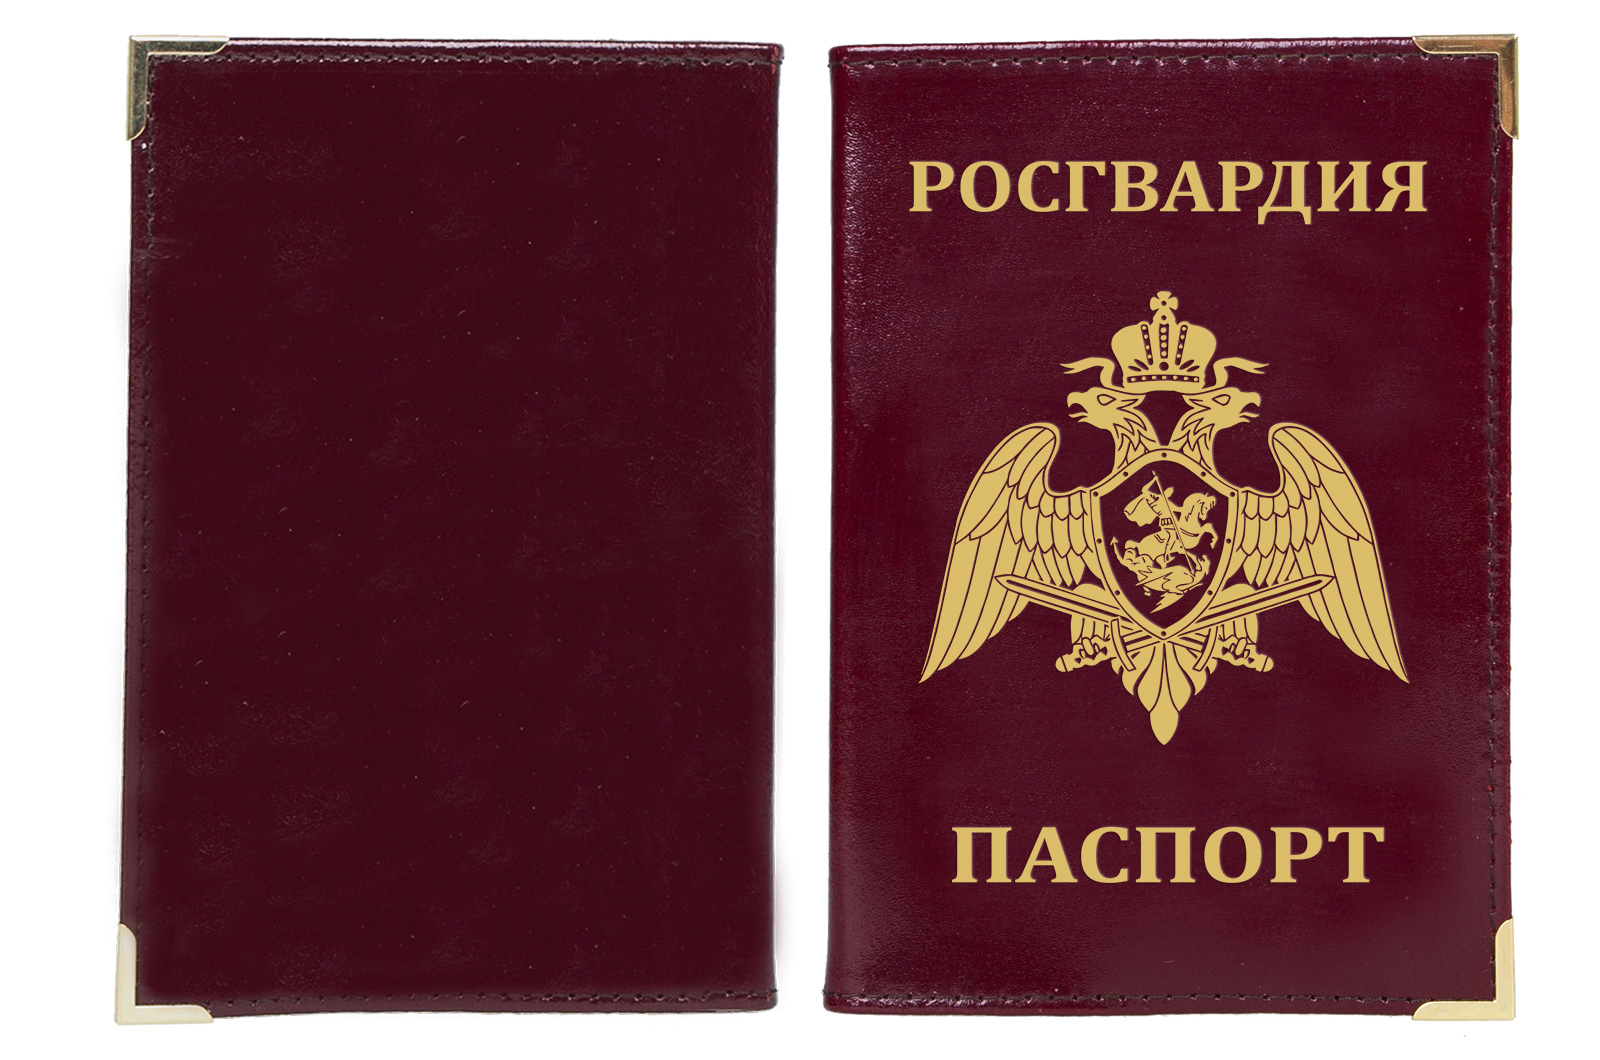 Купить обложку на паспорт с гербовой эмблемой ФСВНГ